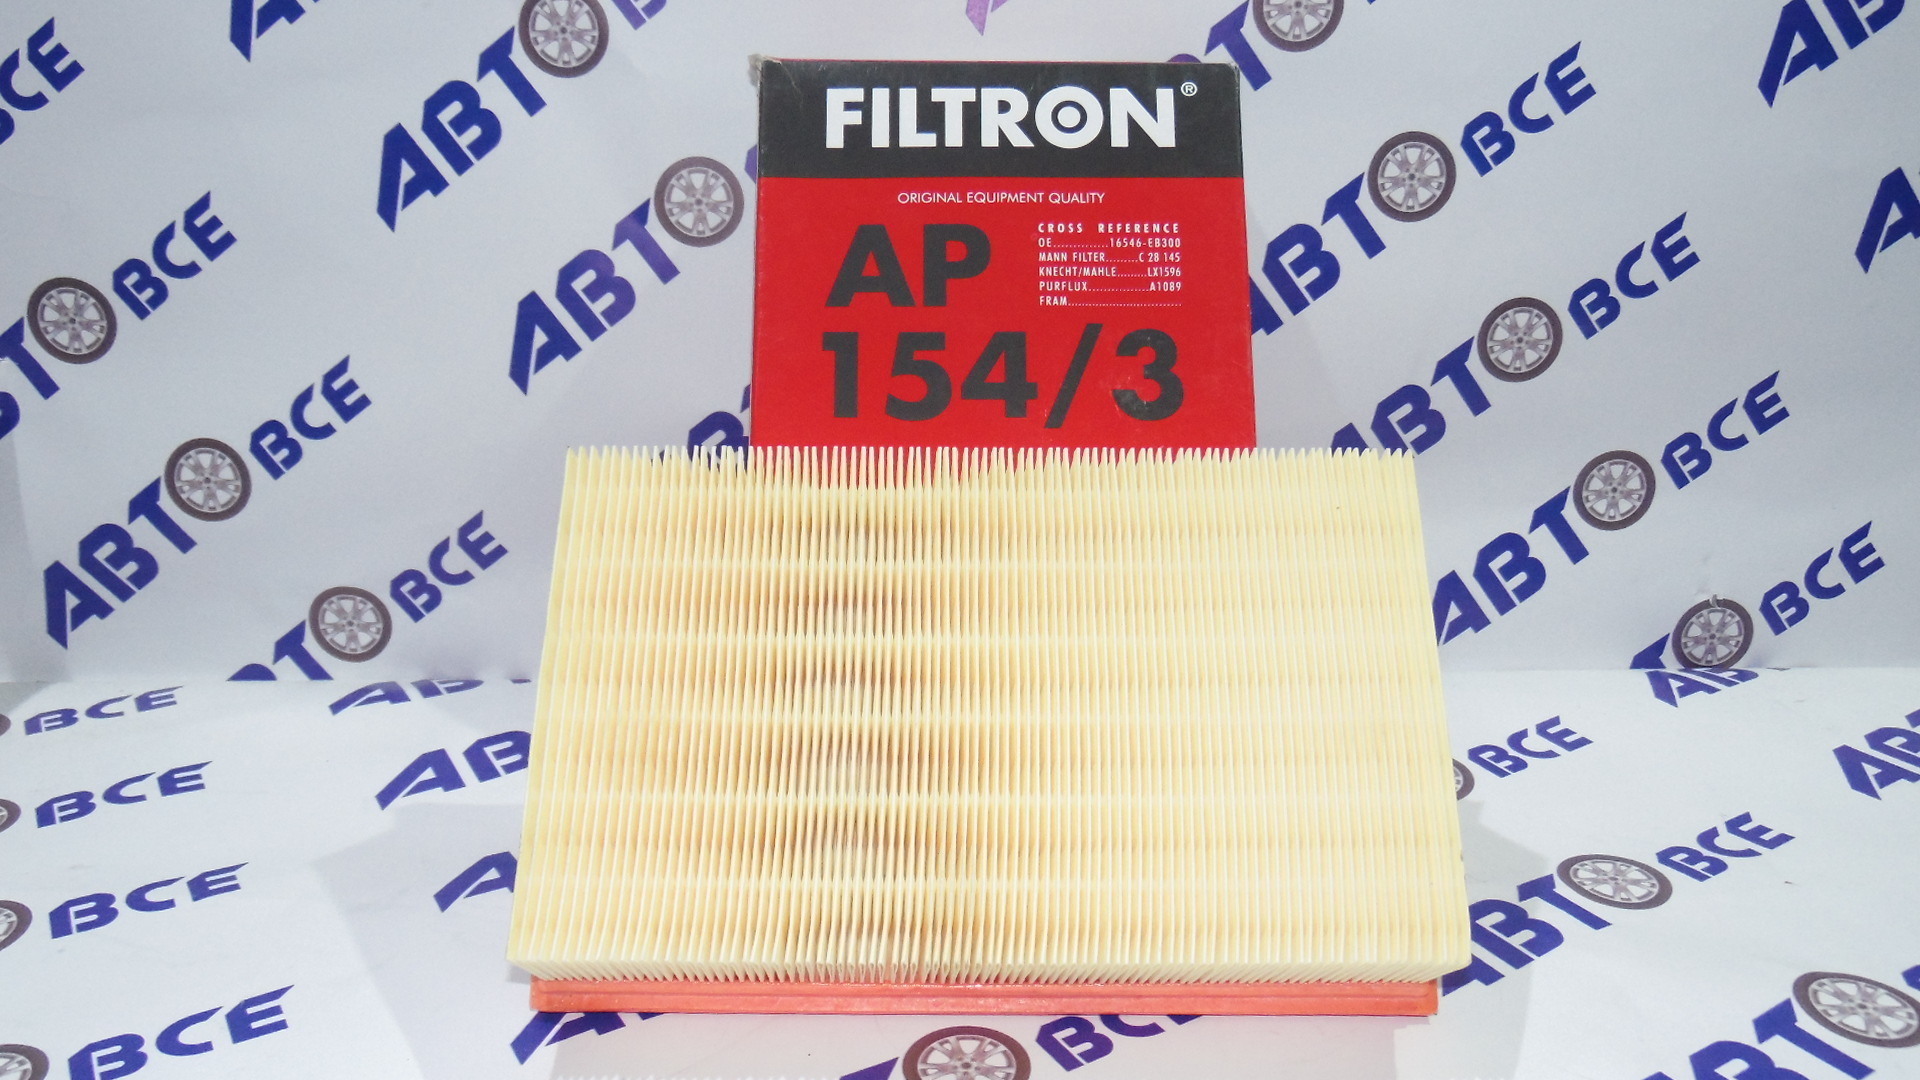 Фильтр воздушный AP1543 FILTRON